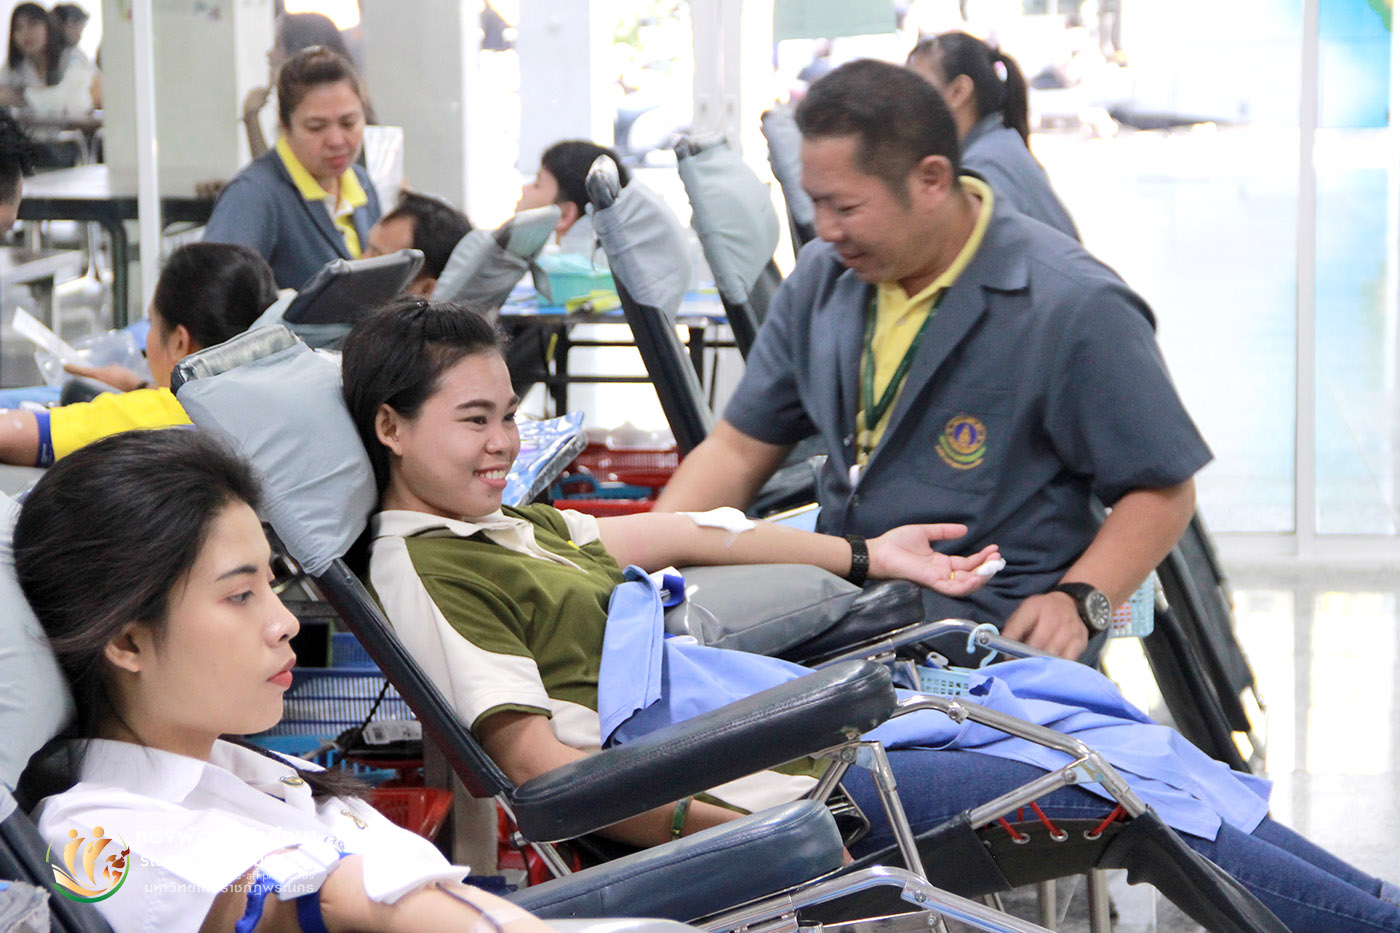 24 ธันวาคม 2561 งานพยาบาลและส่งเสริมสุขภาพ กองพัฒนานักศึกษา จัดโครงการบริจาคโลหิตเพื่อช่วยเหลือผู้ป่วยโรงพยาบาลศิริราช ณ ห้องโถงชั้นล่างอาคารฝึกประสบการณ์วิชาชีพเชิงบูรณาการ